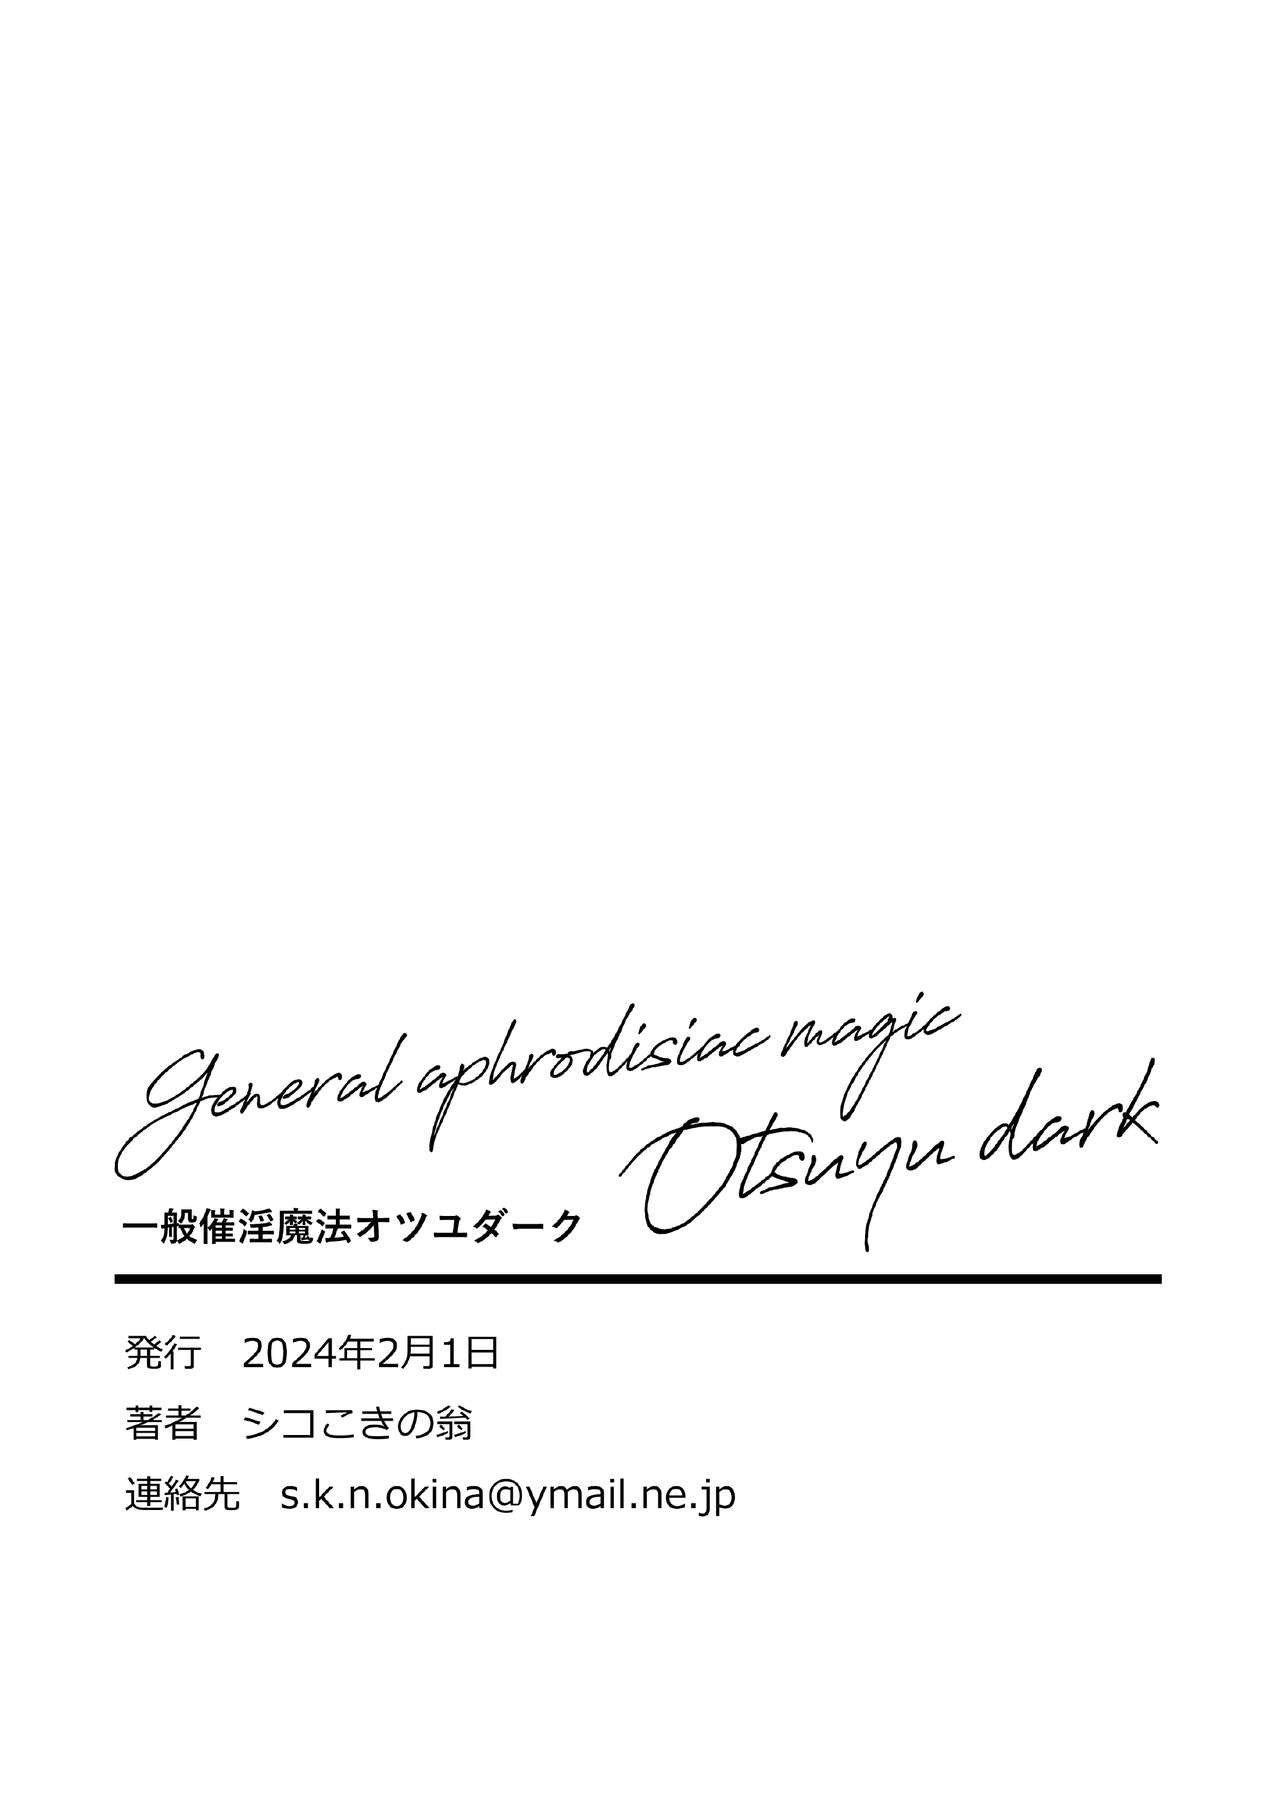 Ippan Saiin Mahou Otsuyu Dark - General aphrodisiac magic Otsuyu dark | 一般催淫魔法 愛液之闇 - Foto 27